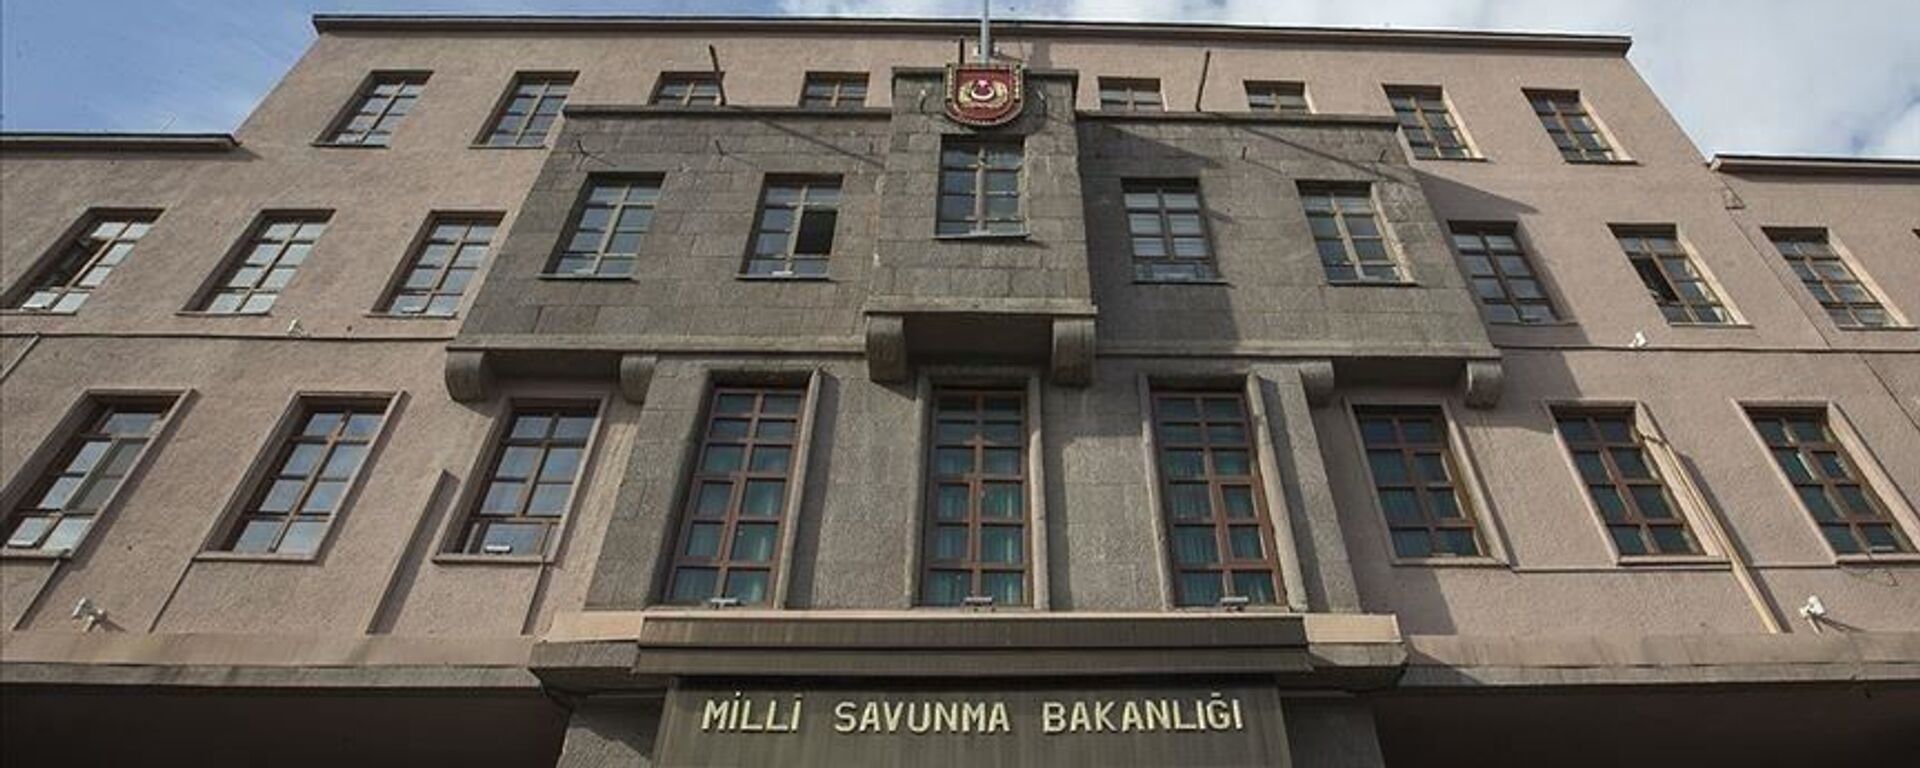 Milli Savunma Bakanlığı - Sputnik Türkiye, 1920, 03.11.2021